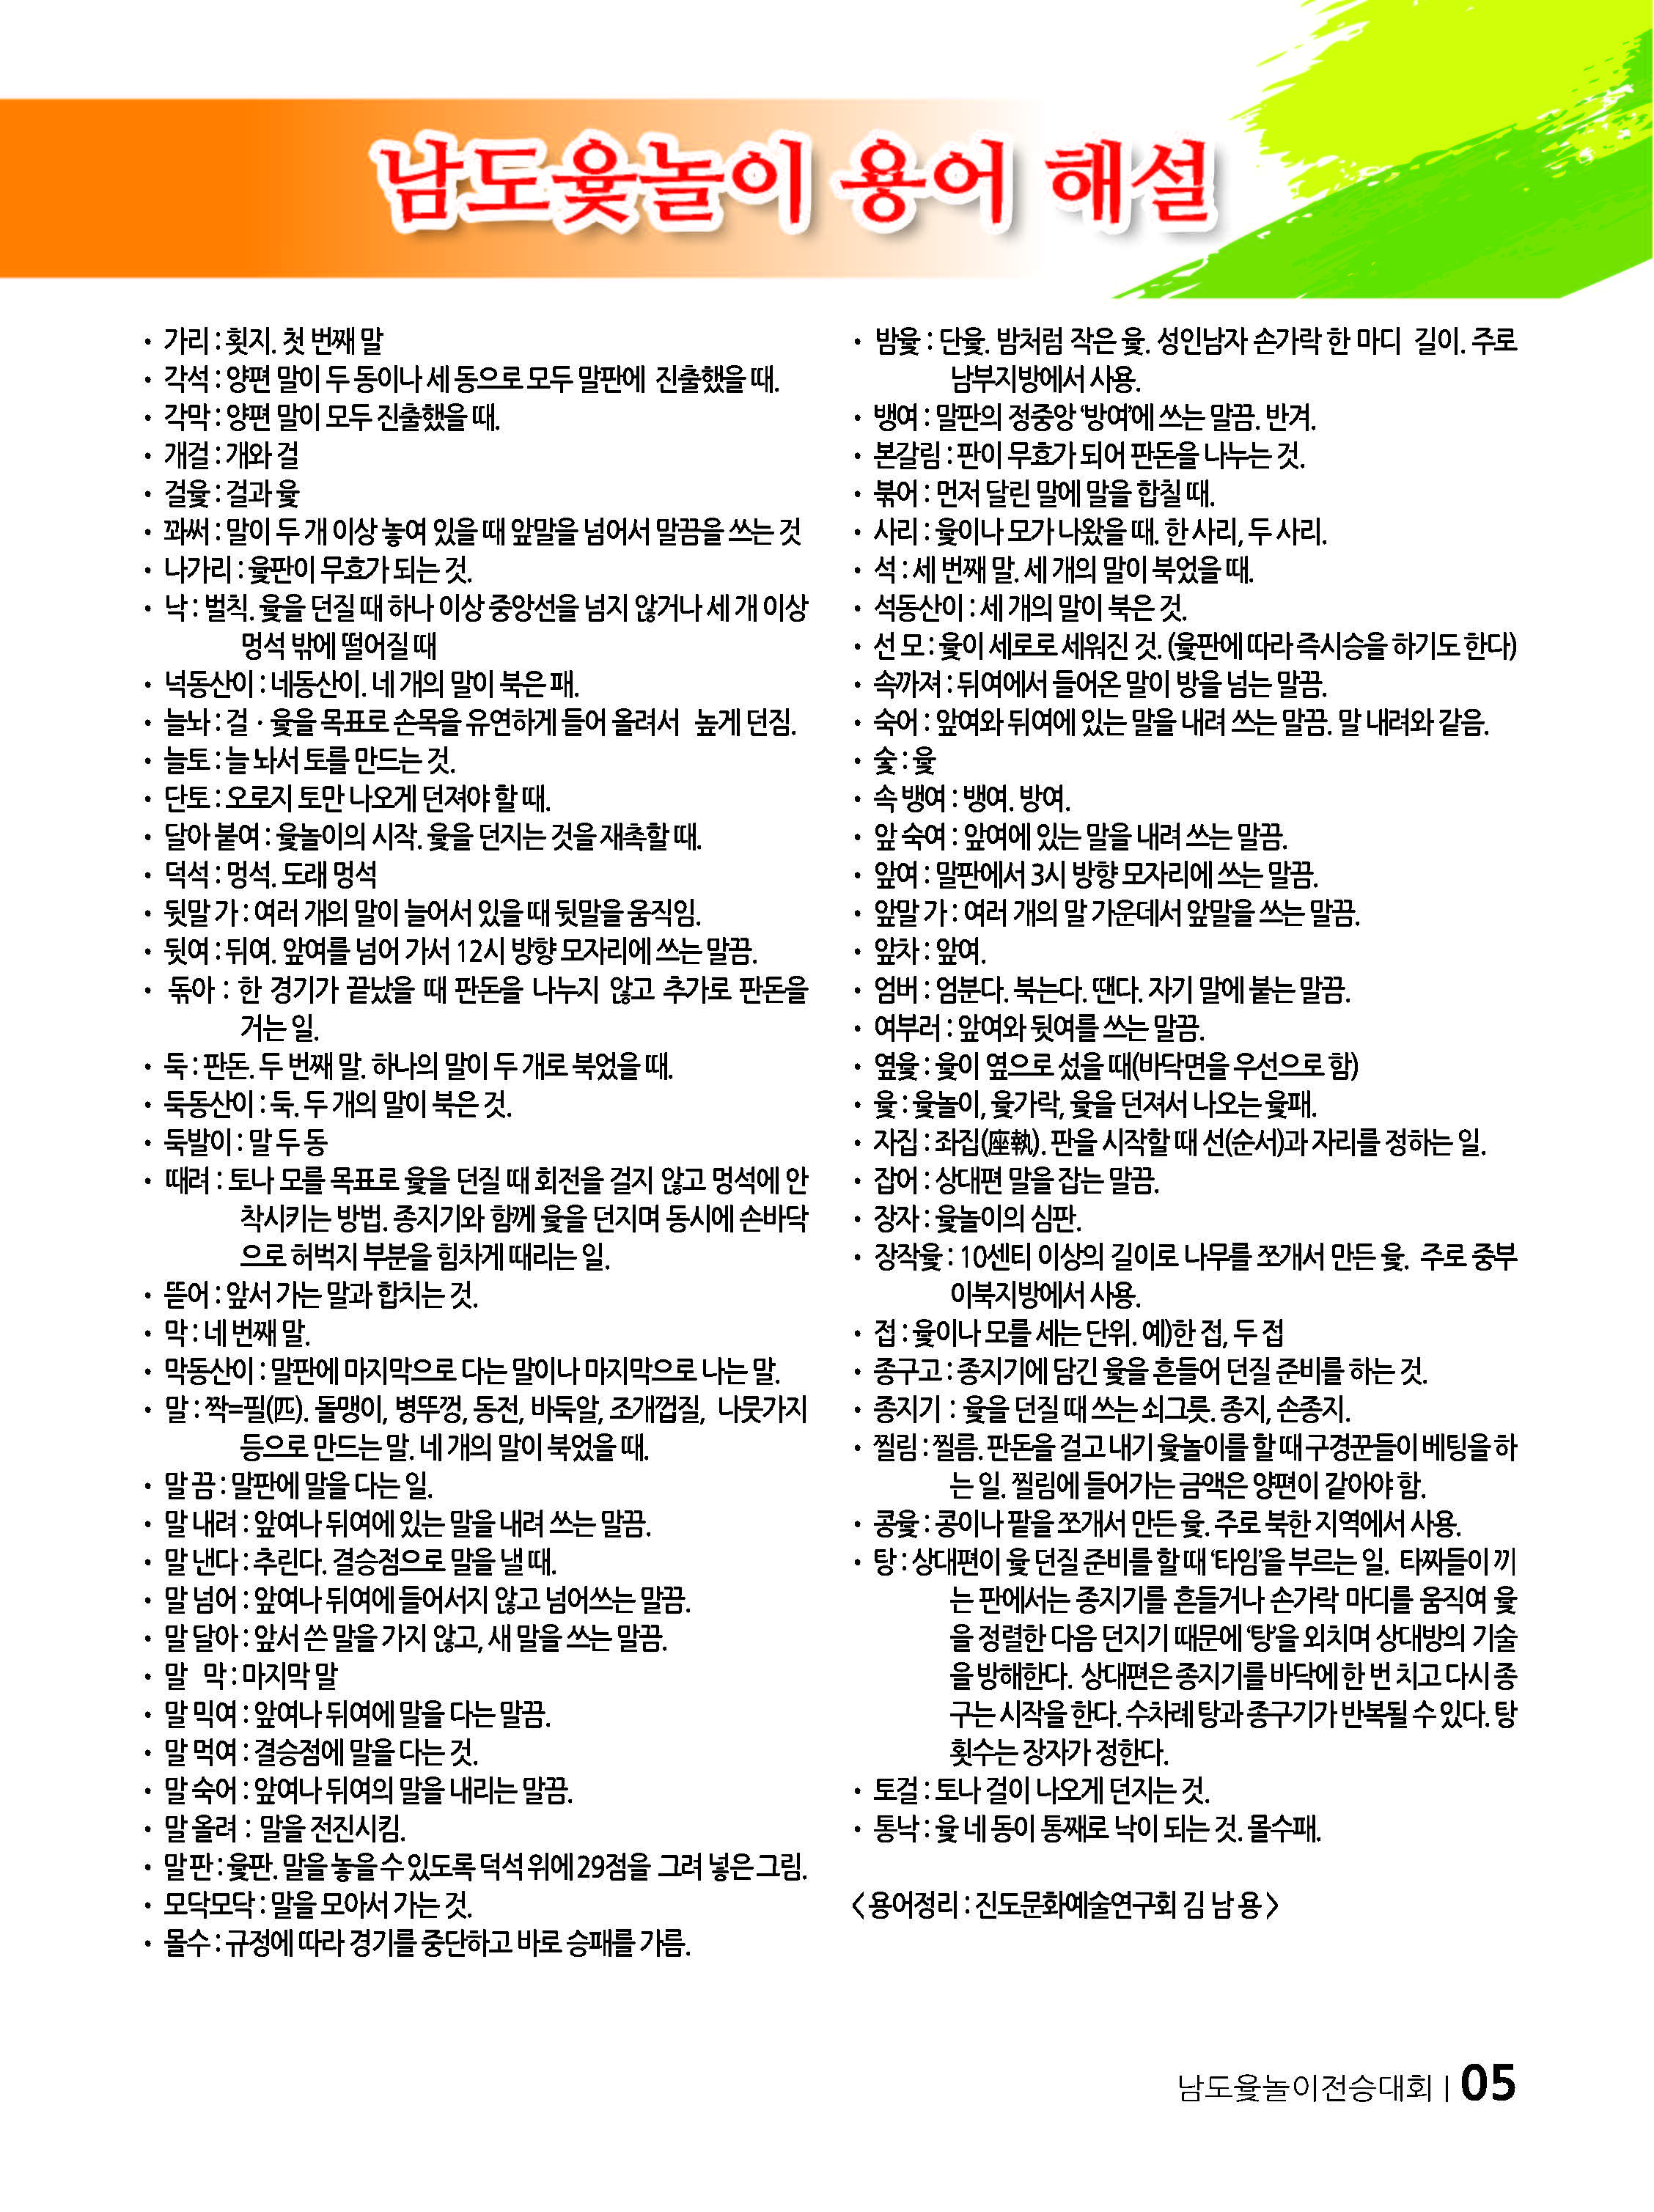 설날맞이~~ 제1회 남도윷놀이전승대회 보고 첨부#5